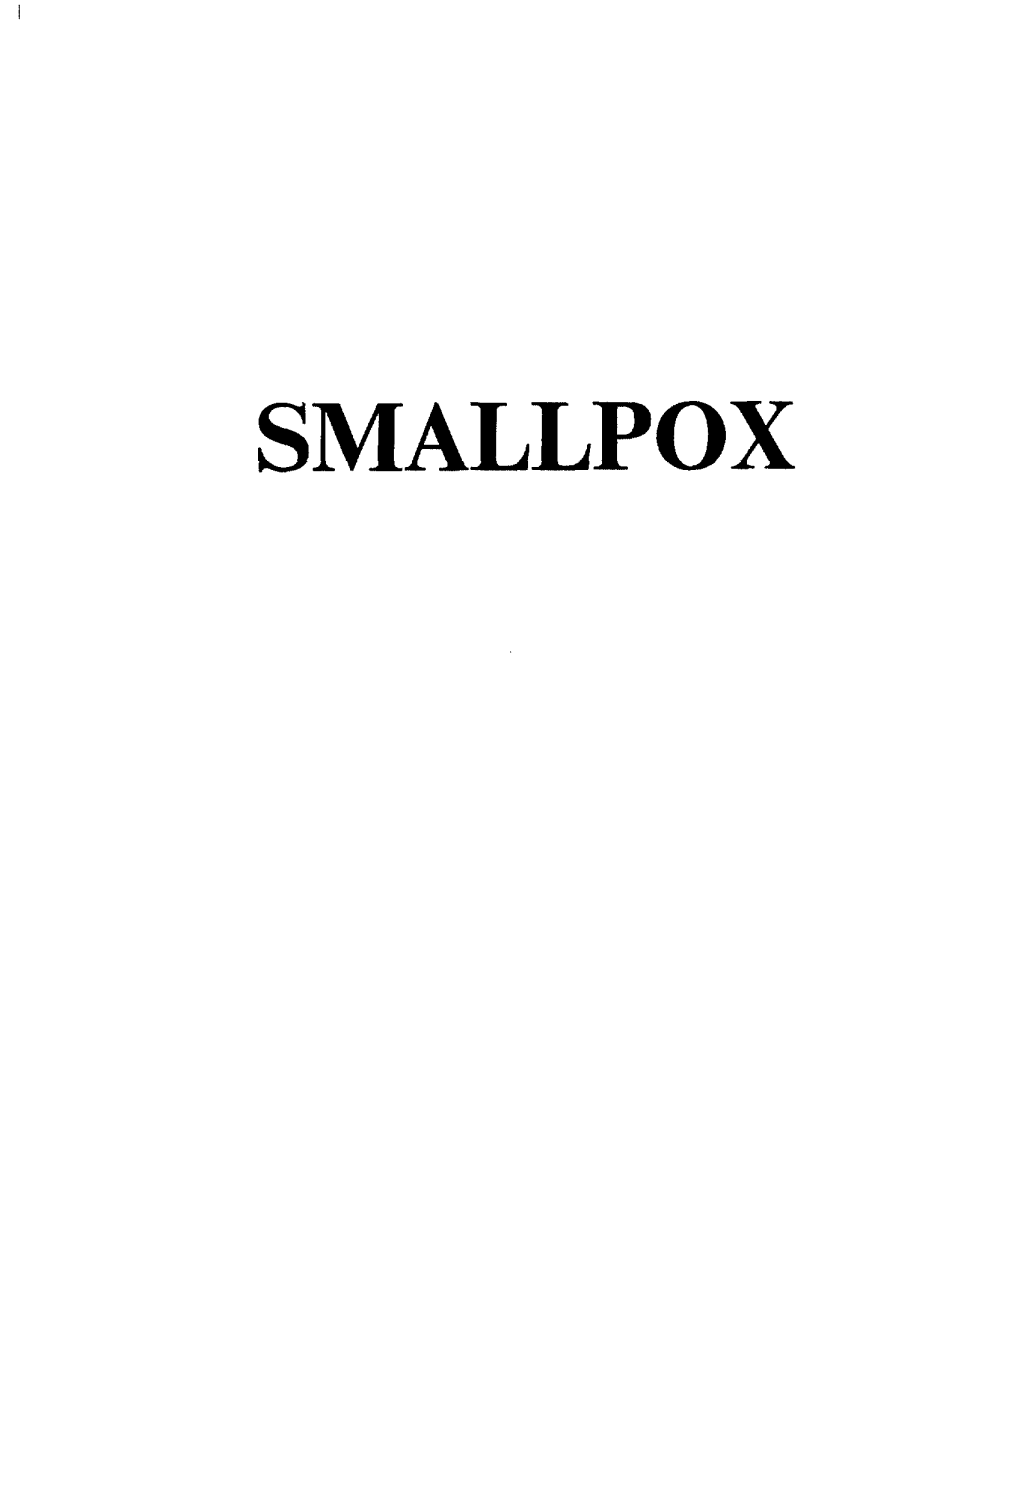 SMALLPOX Nm:Lllpox in in Unv[Ic(.In;It .(L (Hii(L